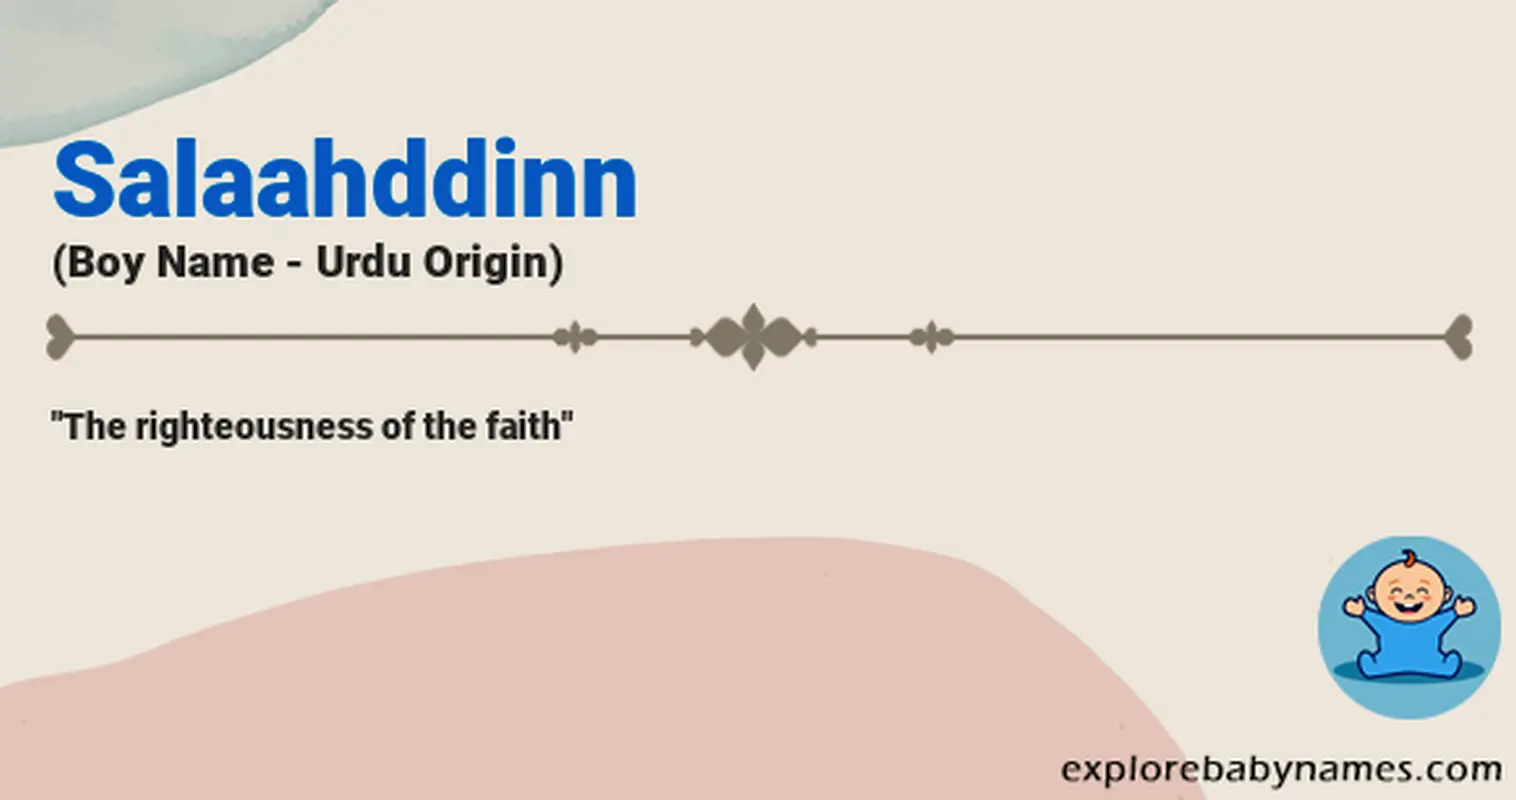 Meaning of Salaahddinn